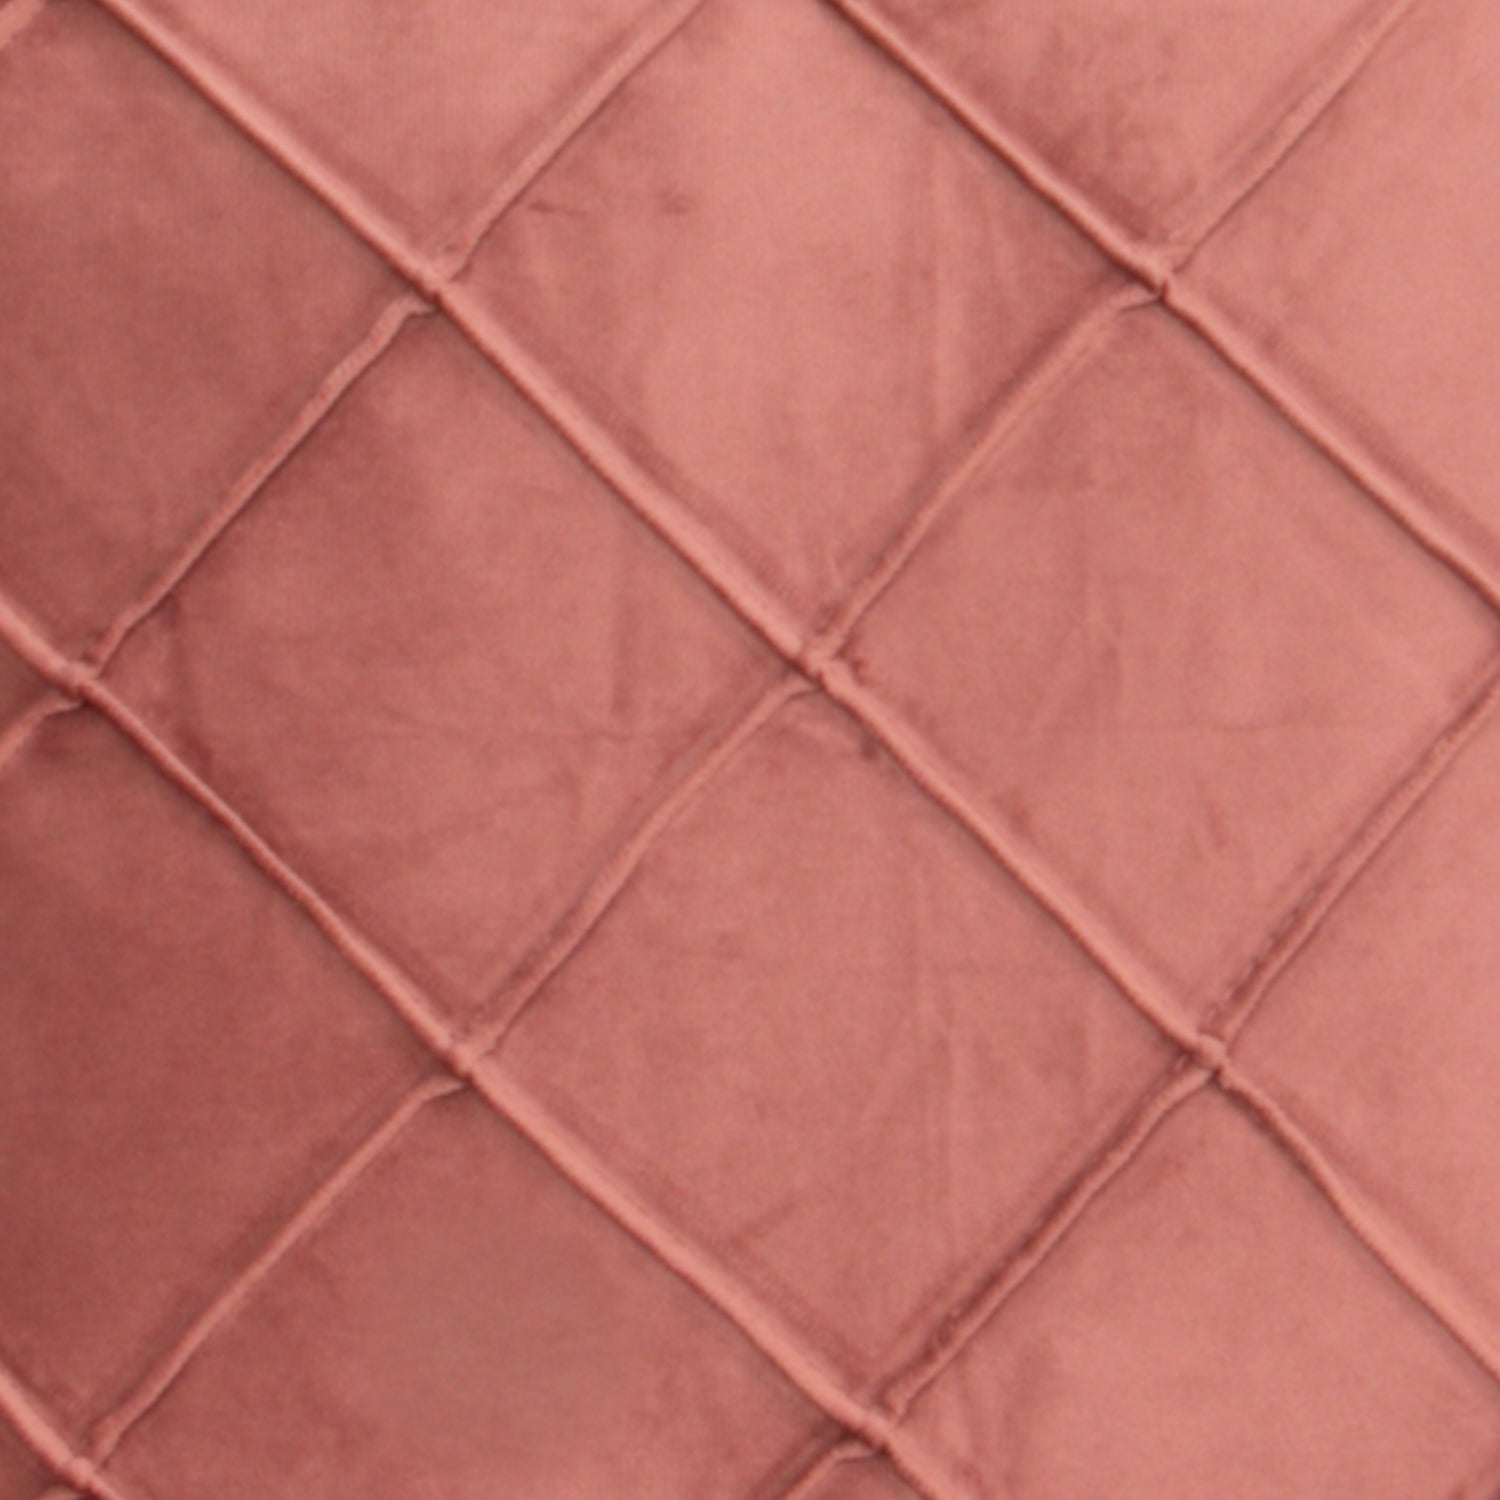 Diamond rose velvet cushion cover by Native